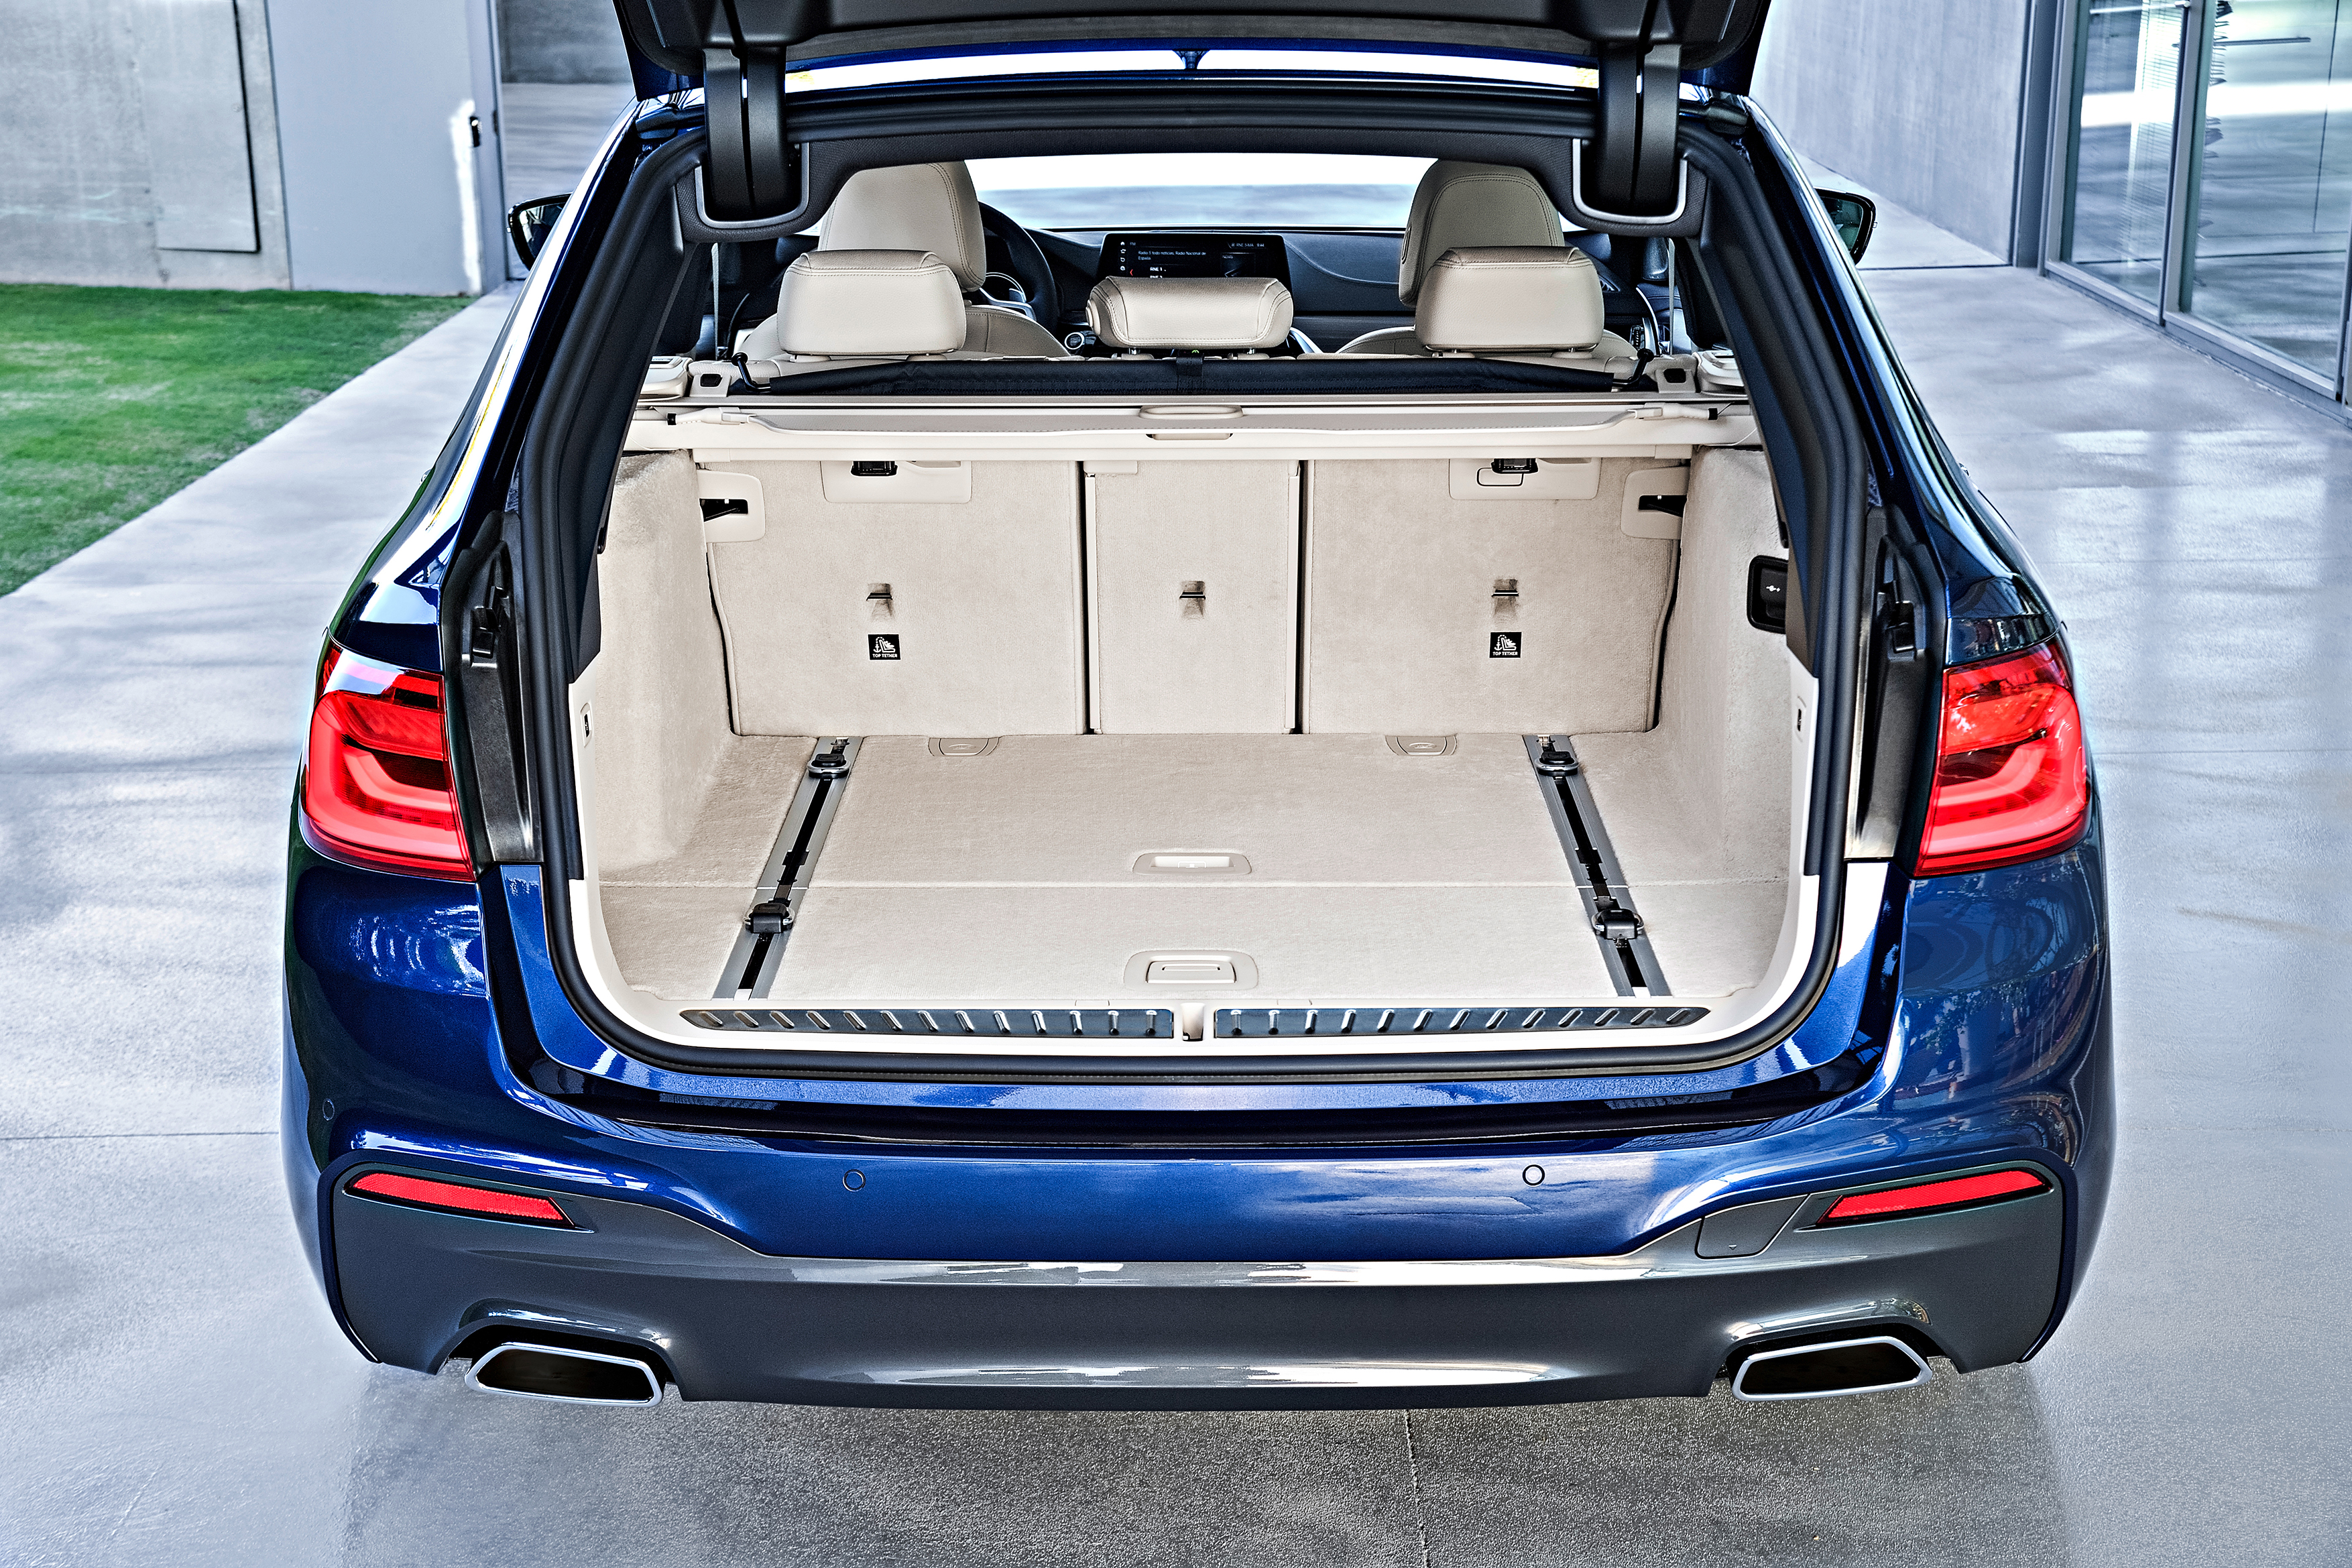 BMW Řada 5 Touring objem kufru